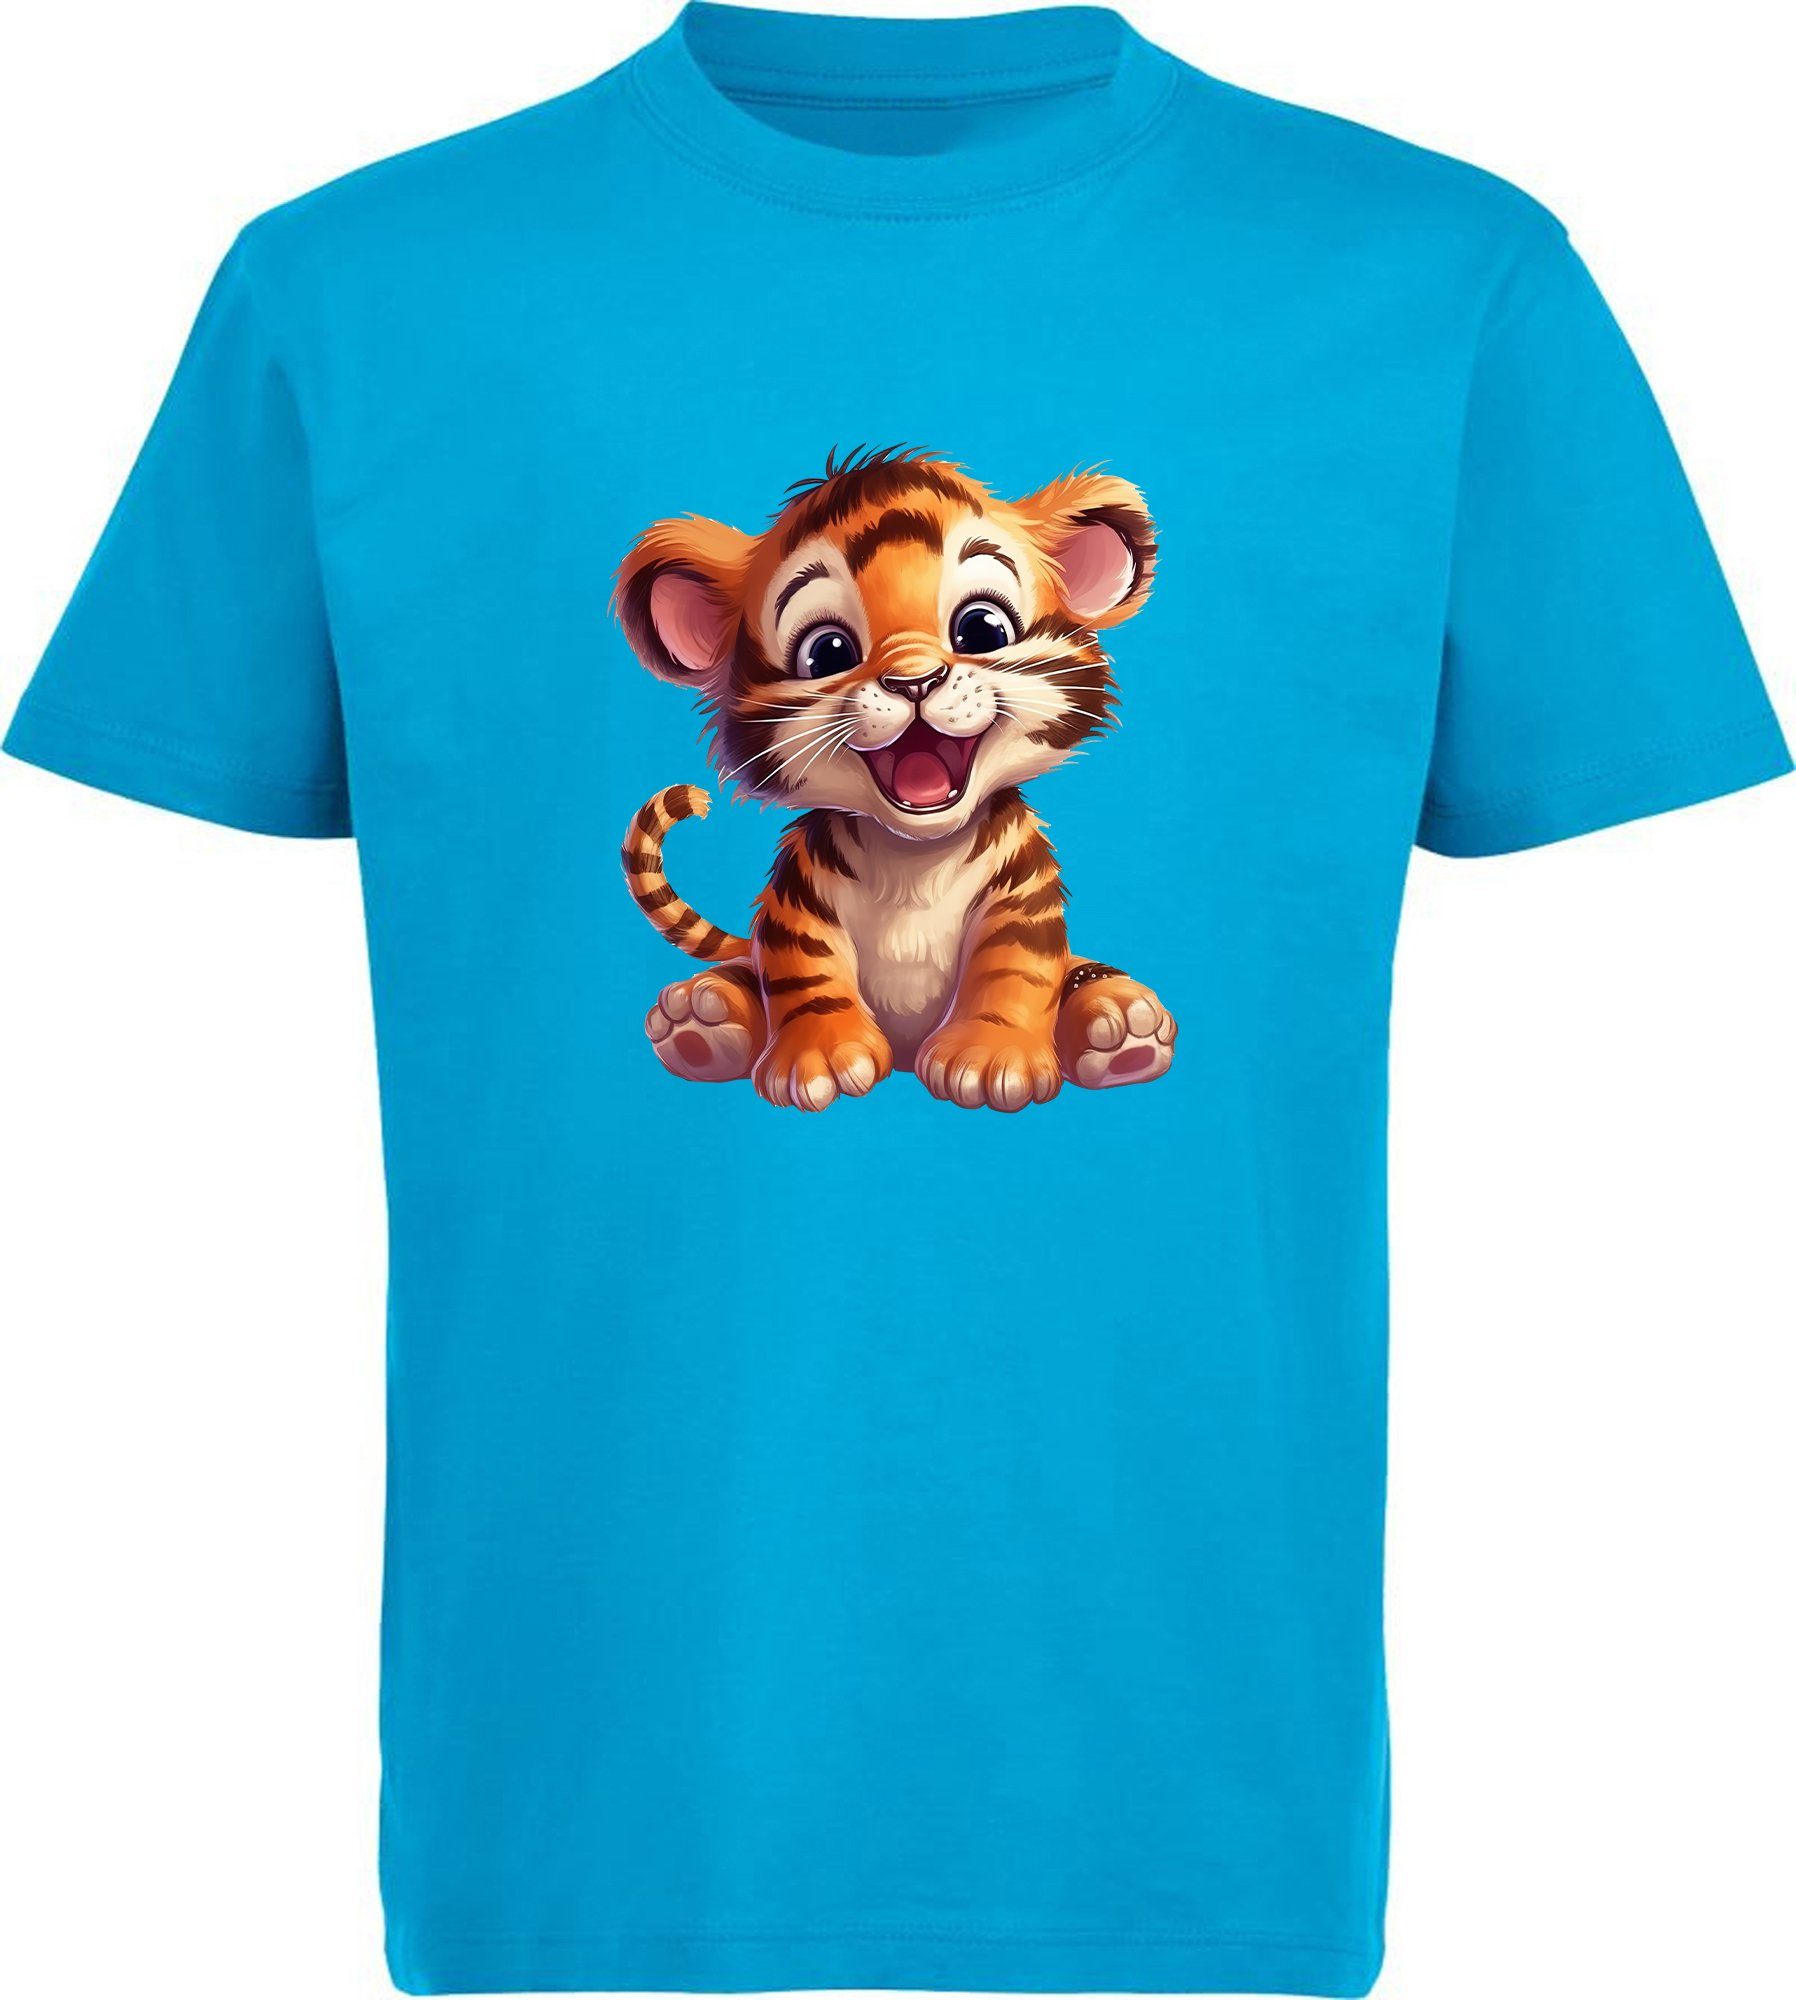 MyDesign24 T-Shirt Kinder Shirt Wildtier Baby i266 Tiger Print blau Baumwollshirt Aufdruck, - bedruckt mit aqua